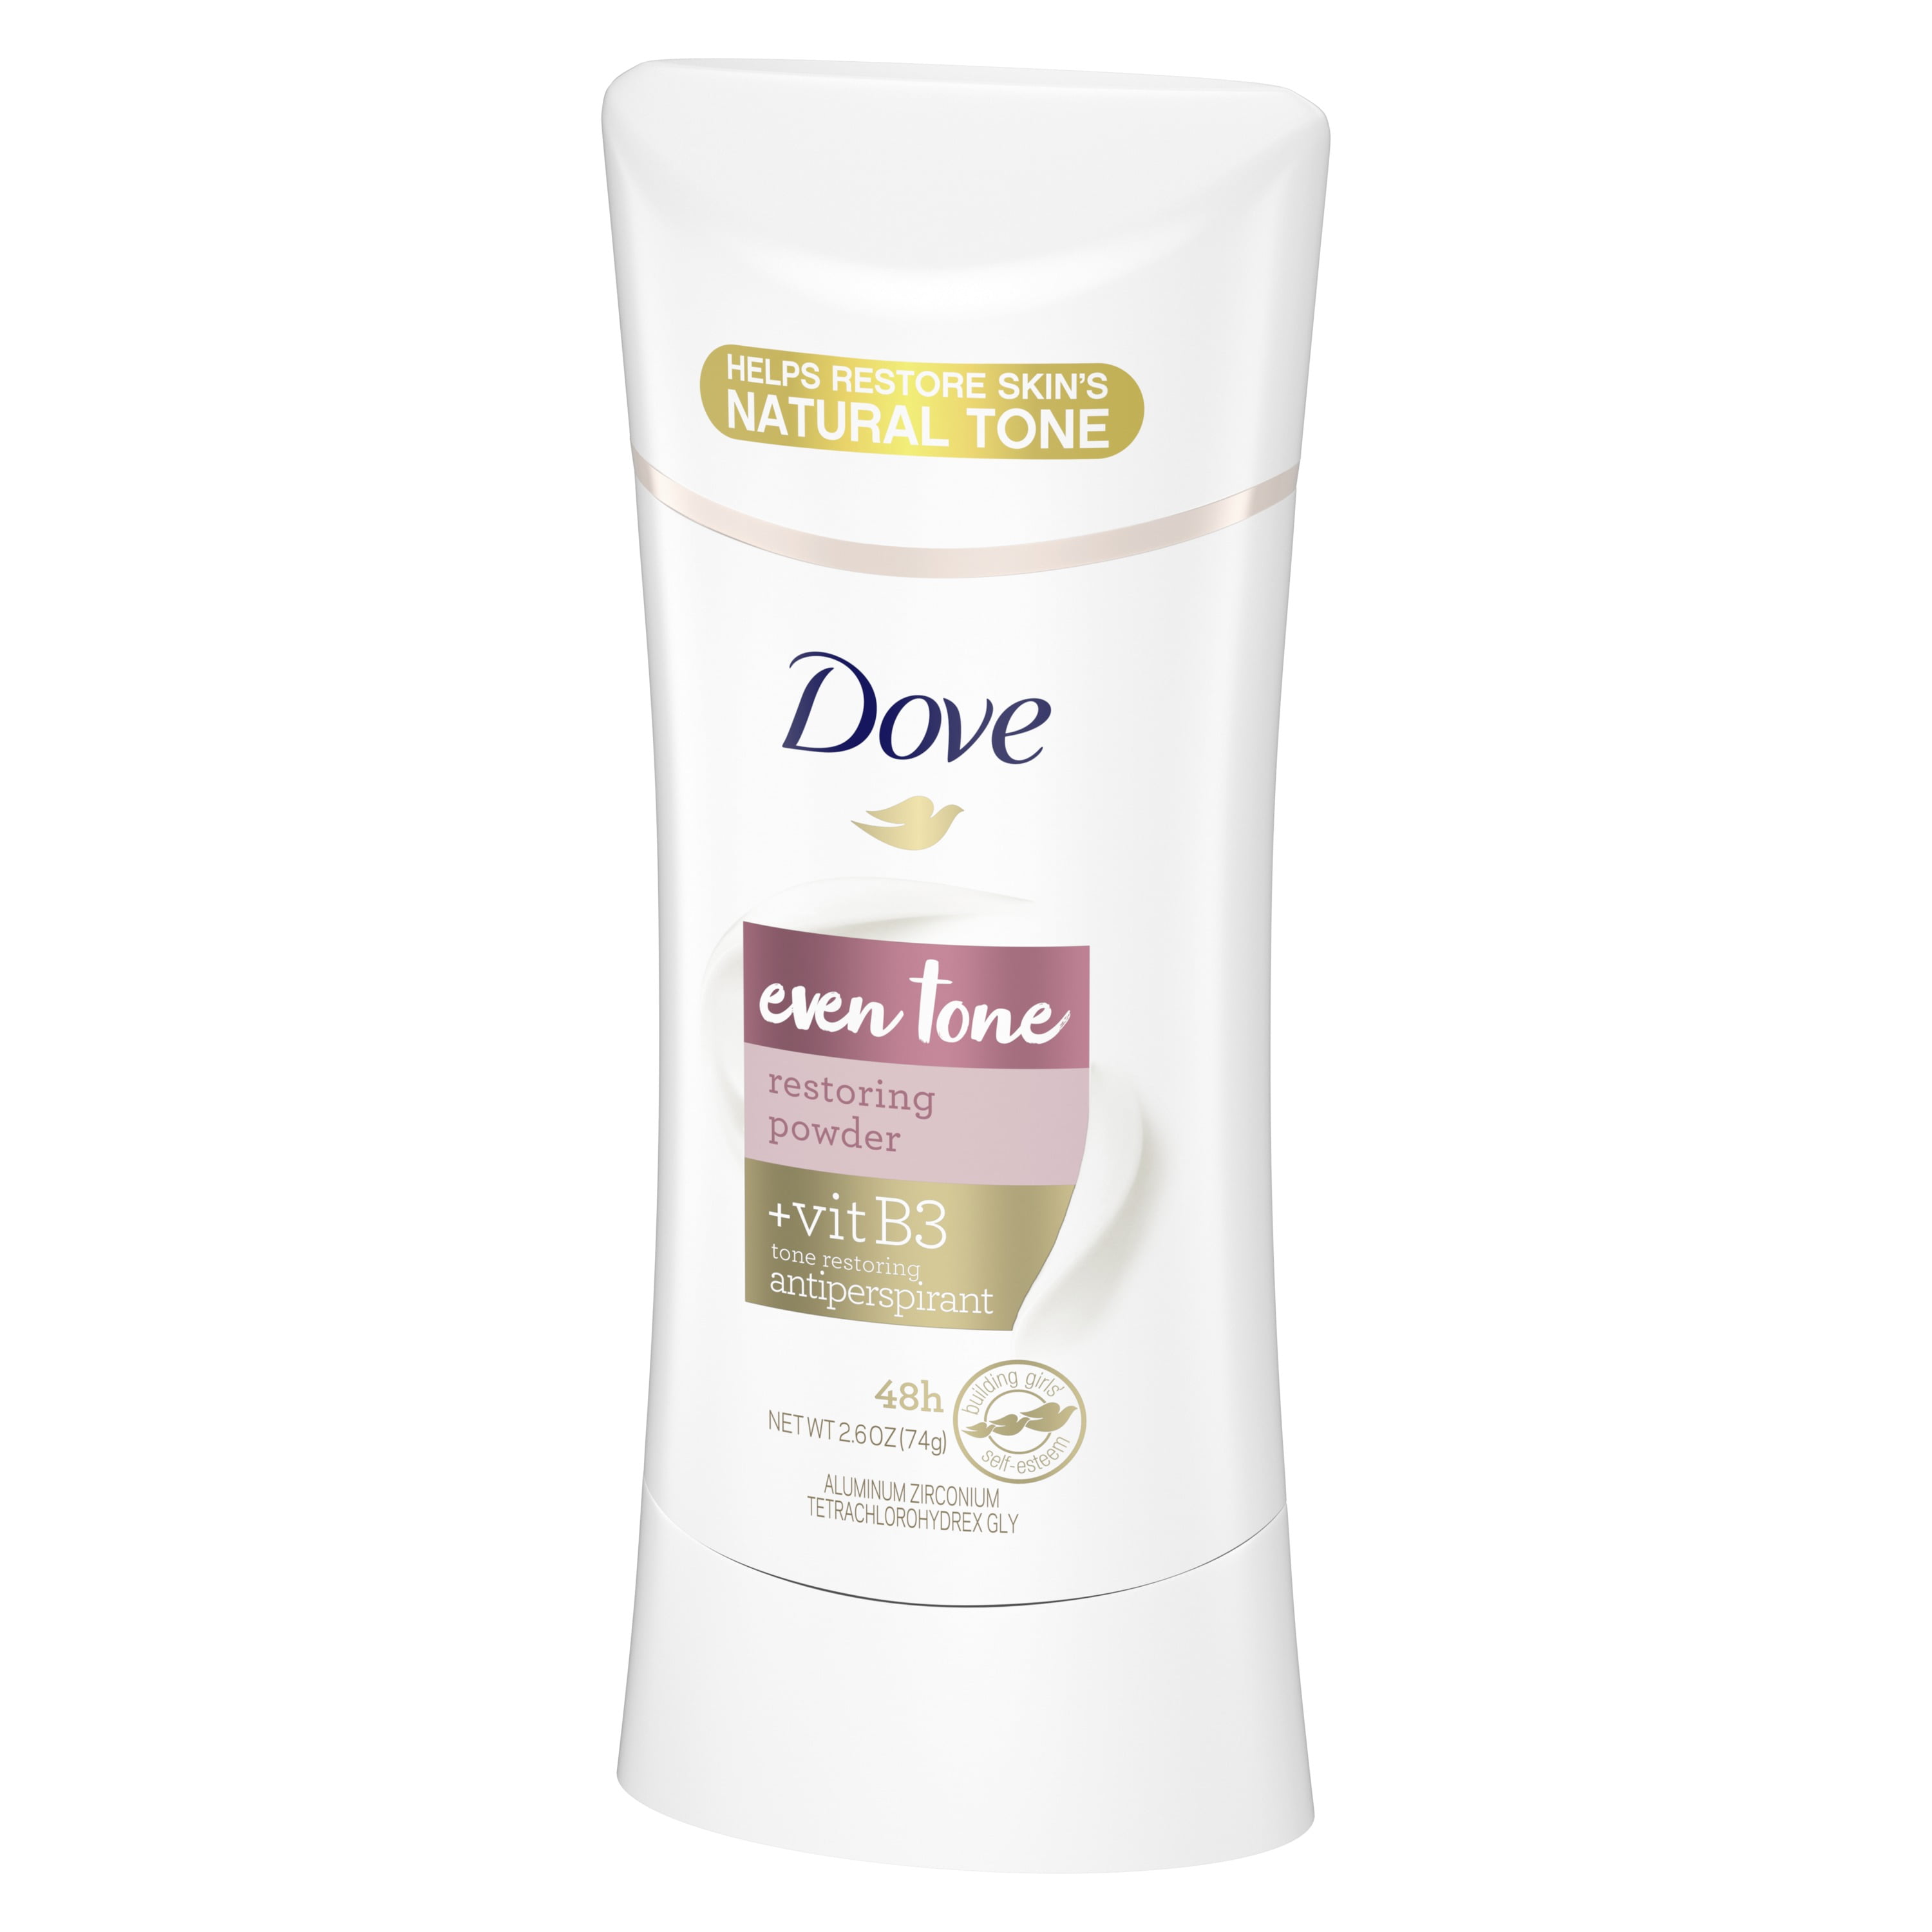 Dove Even Tone Antiperspirant Deodorant for Uneven Skin Tone Restoring  Powder Restores Natural Underarm Skin Tone 2.6 OZ - Walmart.com -  Walmart.com